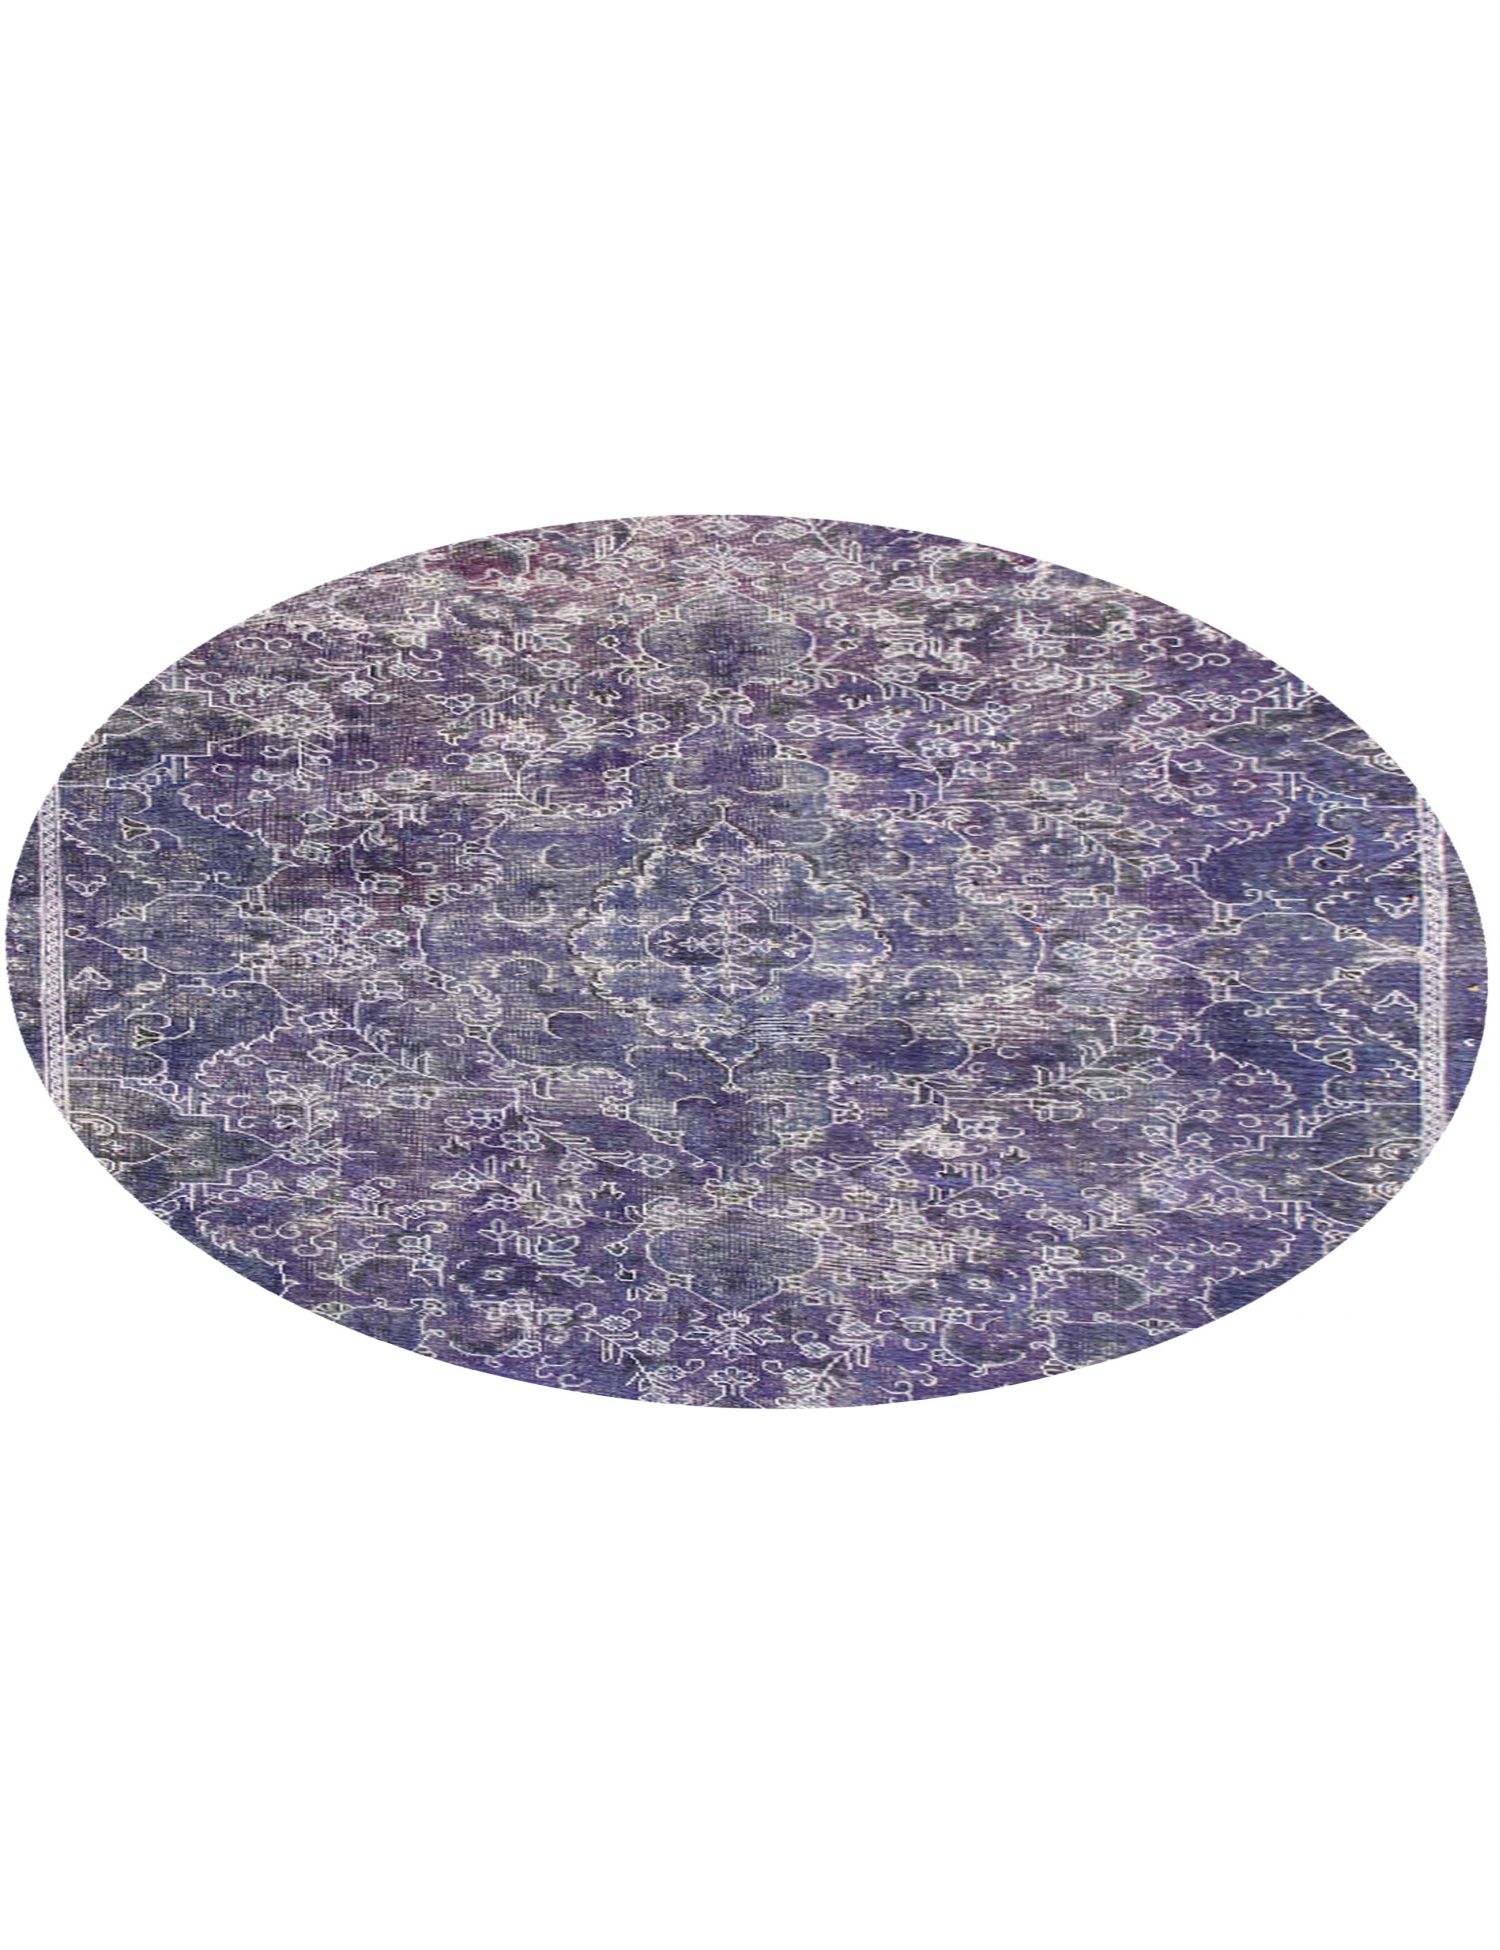 Rund  Vintage Teppich  lila <br/>200 x 200 cm